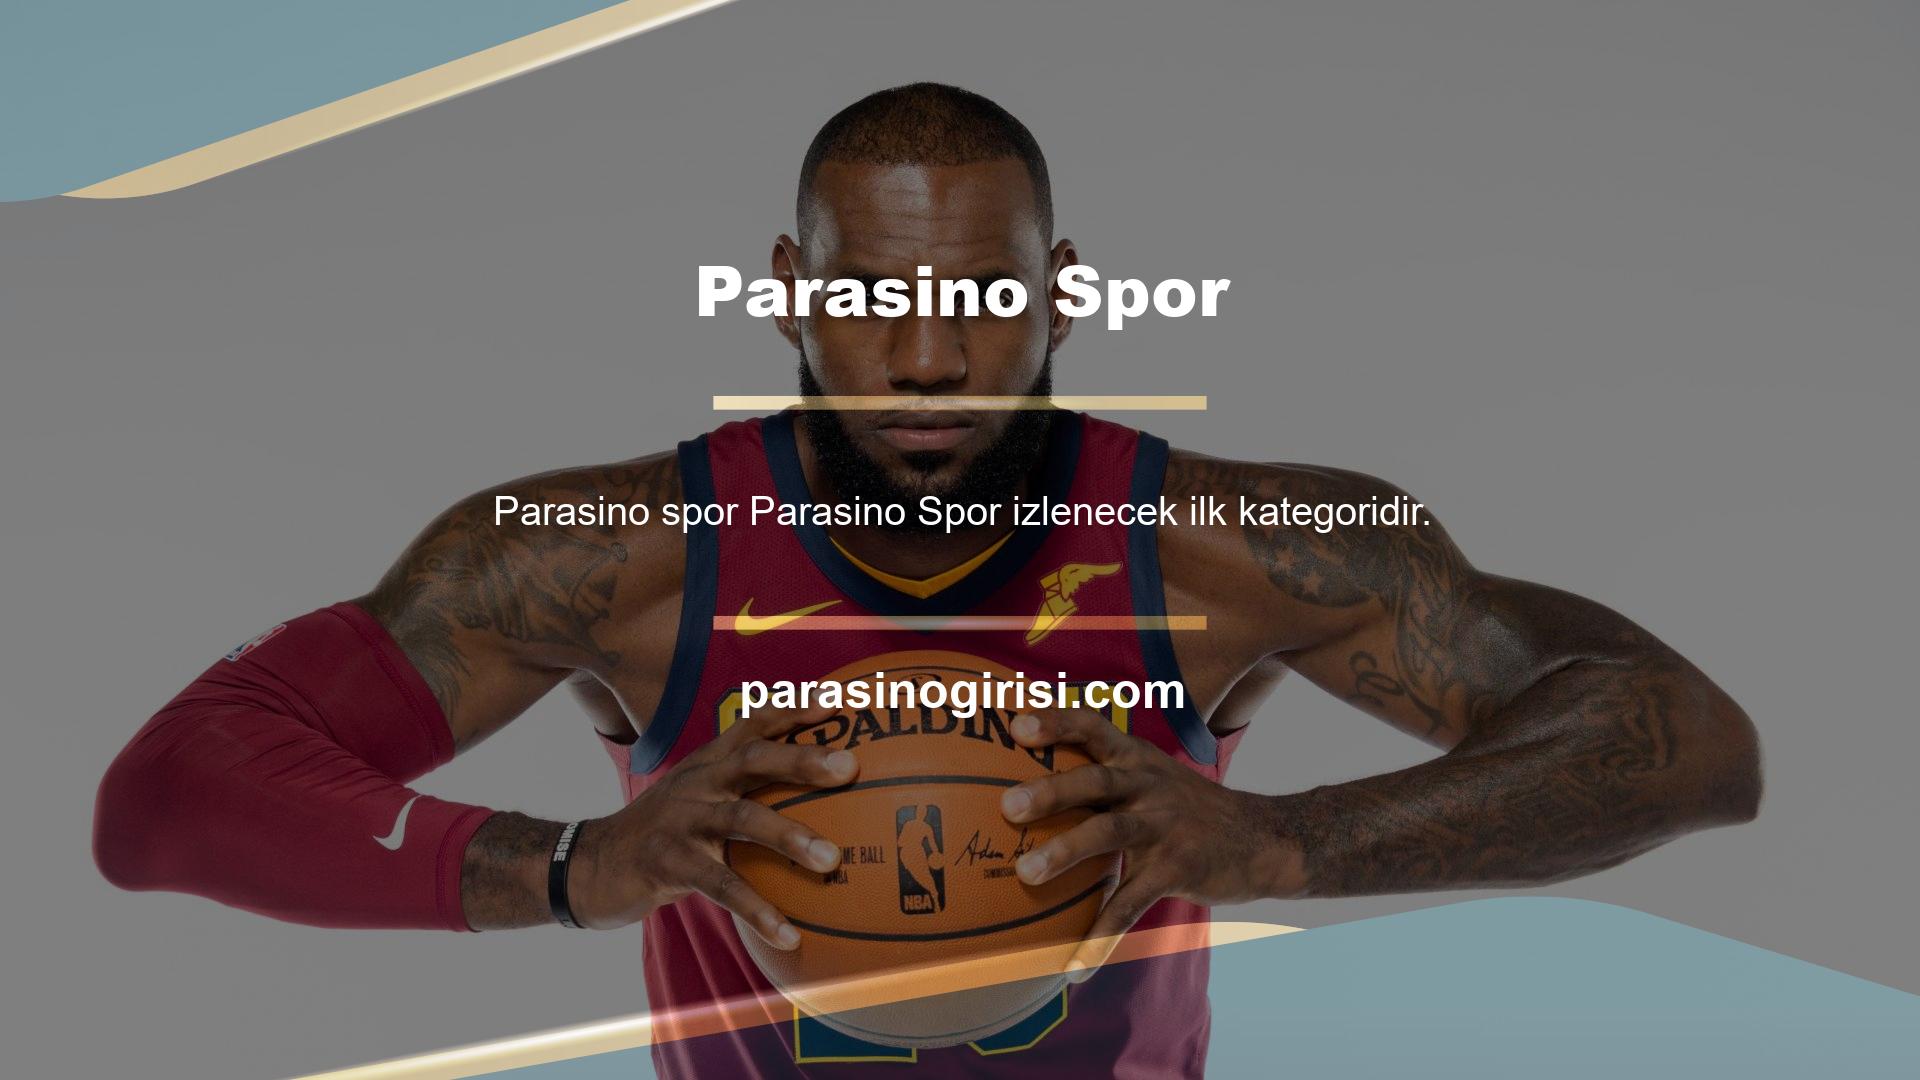 Ev Sporları Oyun Hizmetleri, sizi Parasino ofisini ziyaret etmeye davet ediyor